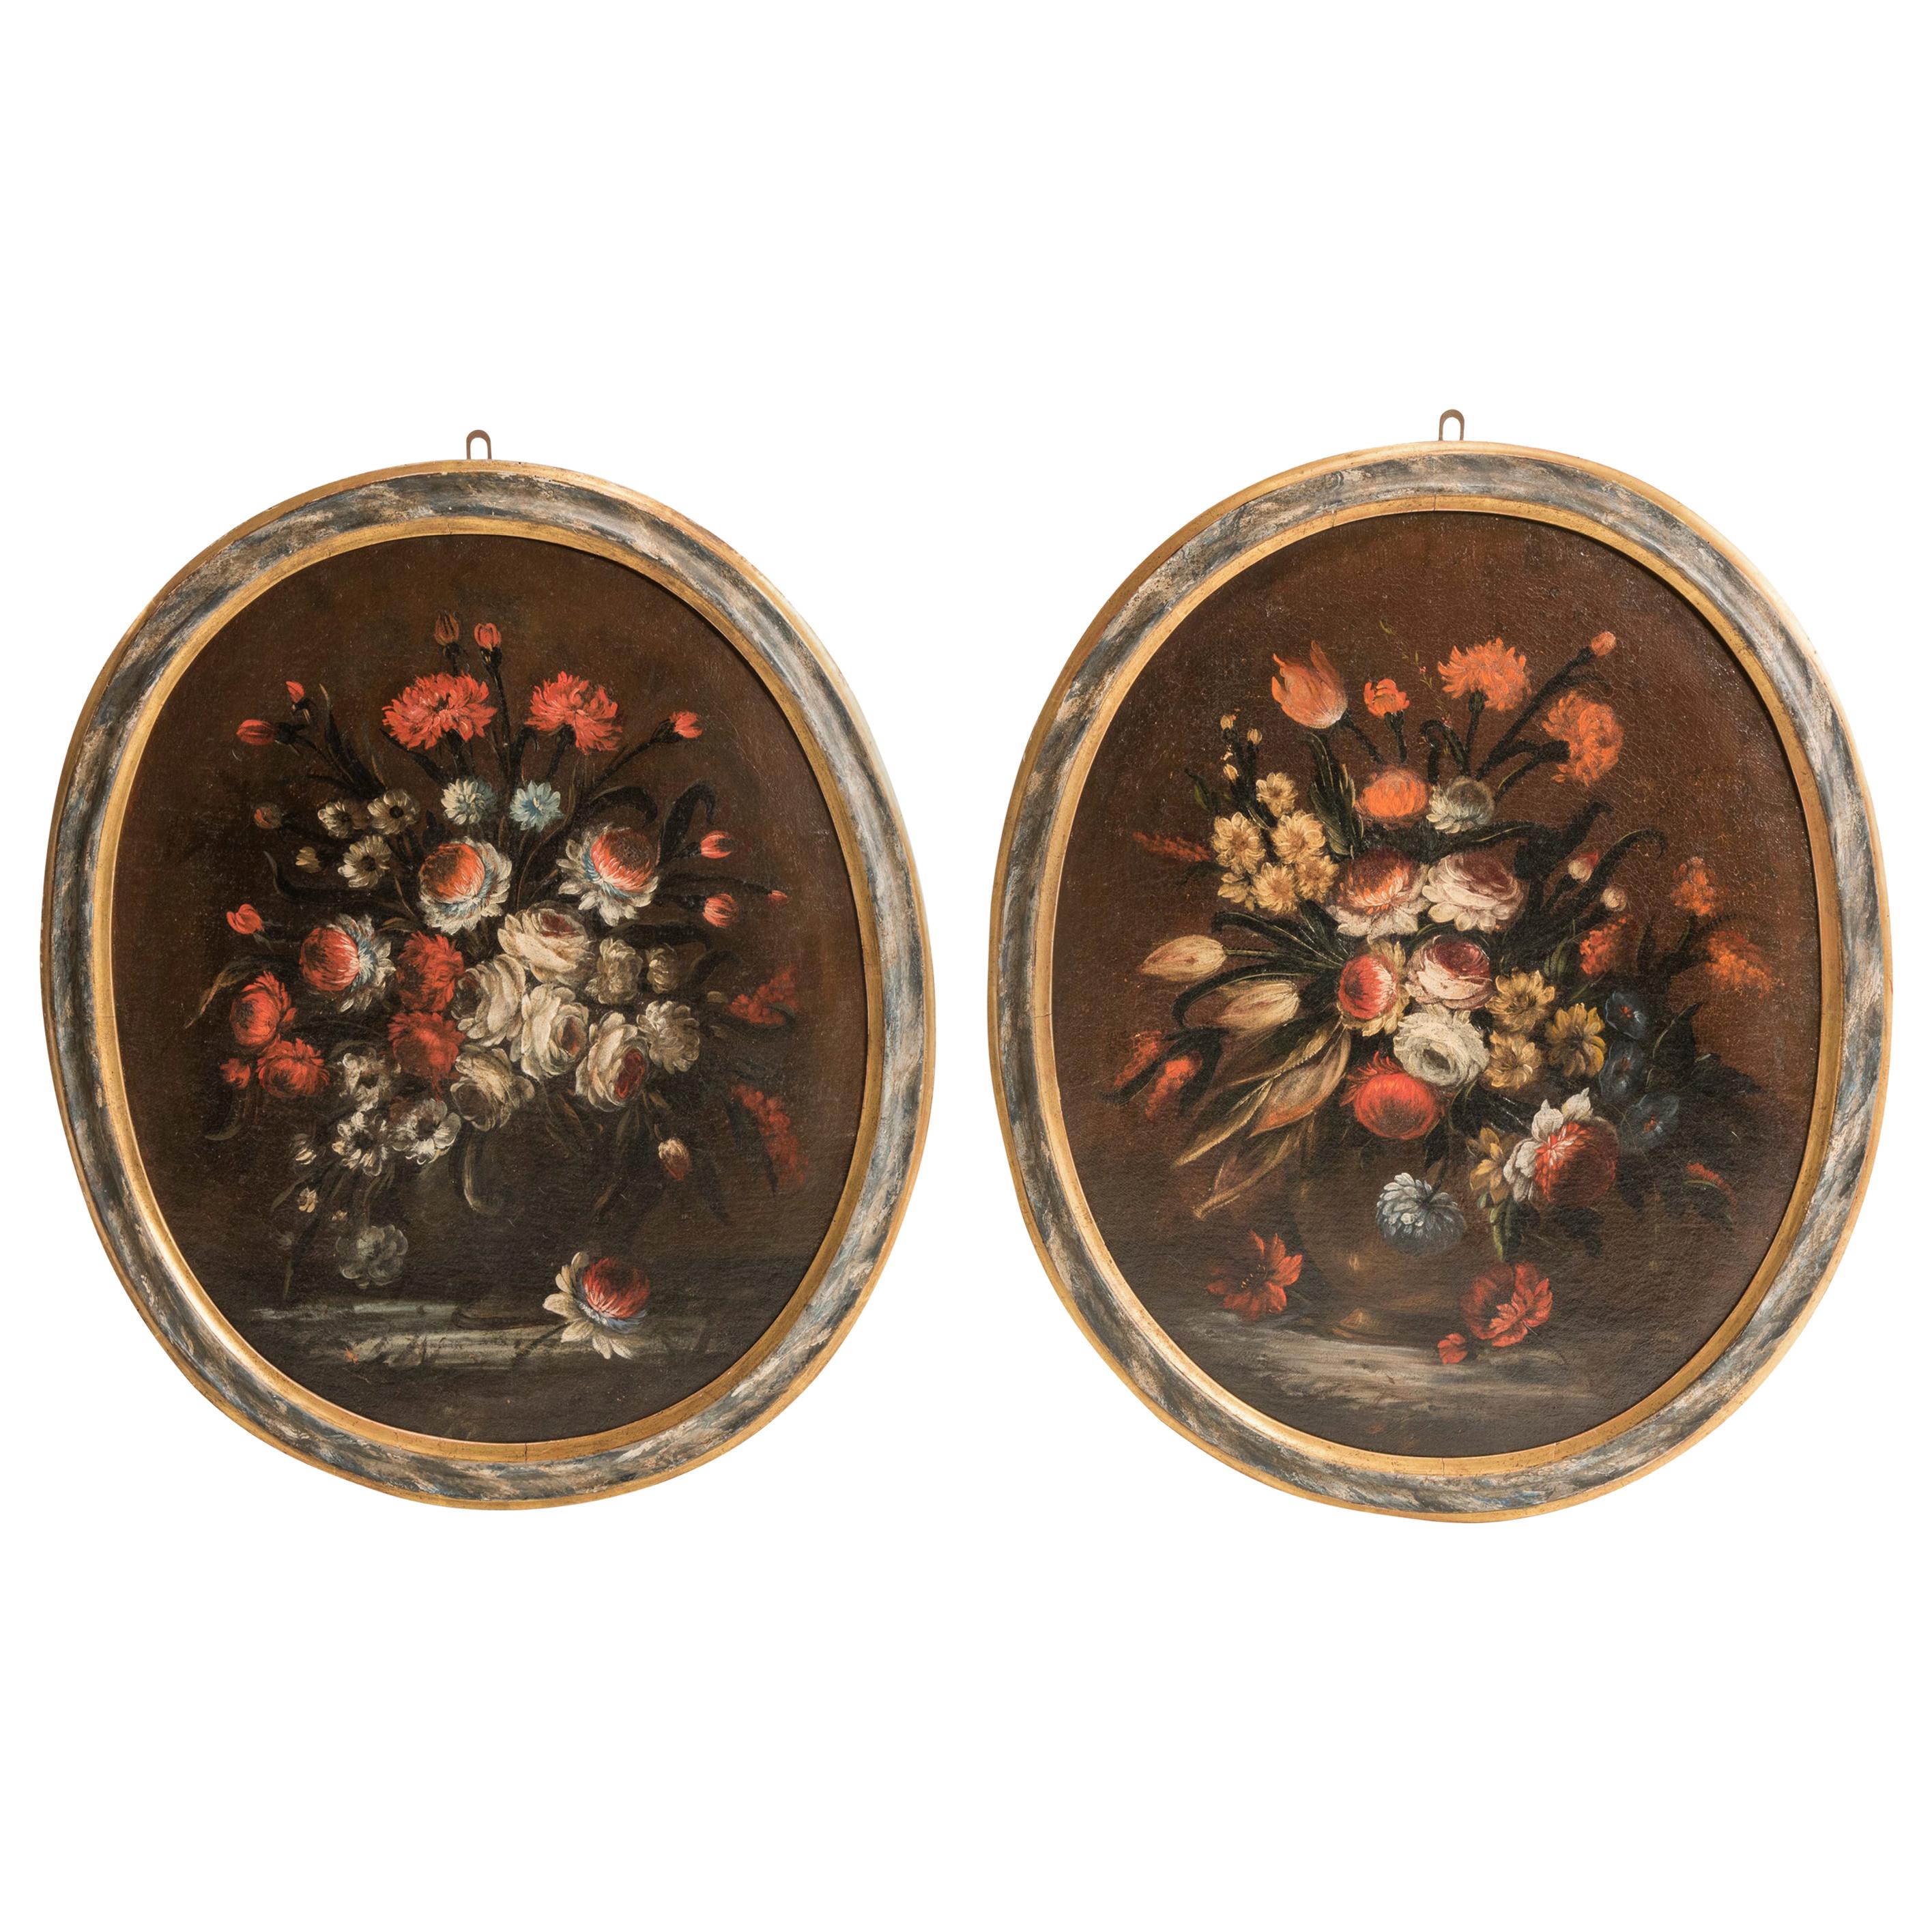 Tableaux italiens de natures mortes avec cadres ovales laqués de la fin du XVIIe siècle, fleurs